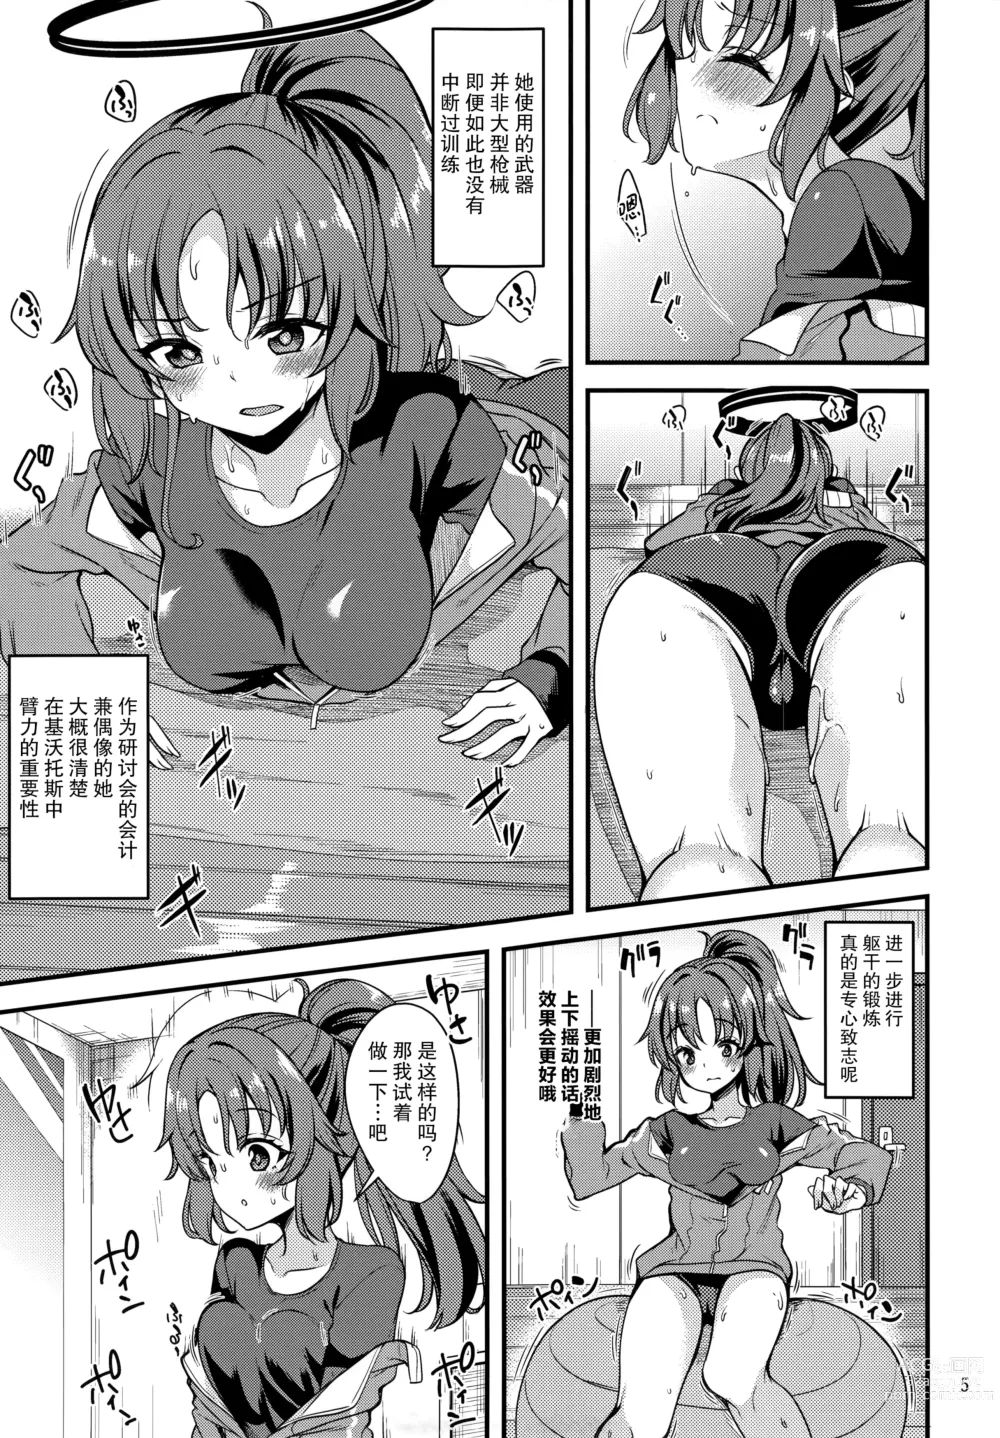 Page 5 of doujinshi 偶像优香的IV计划